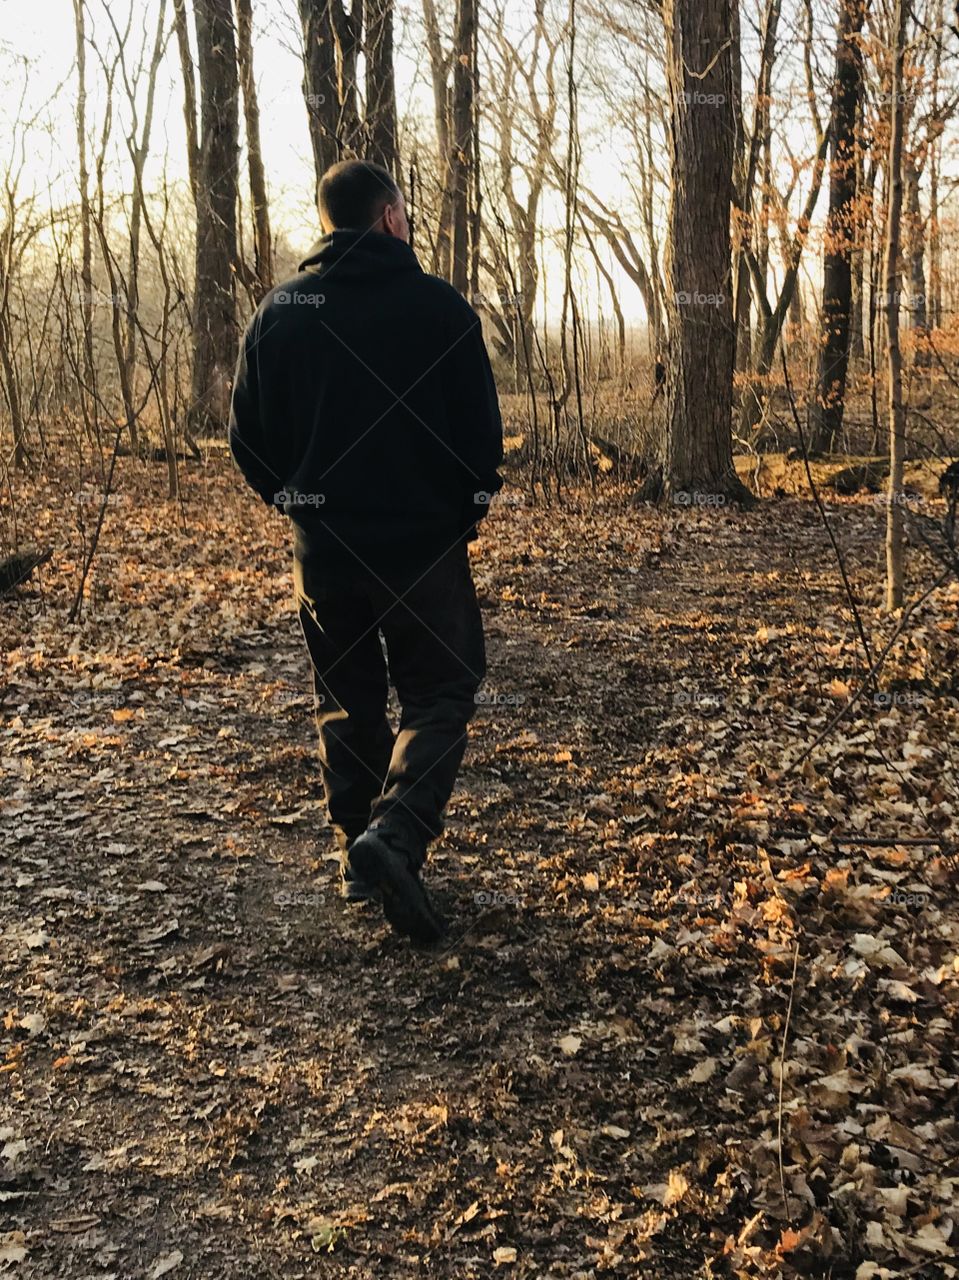 Walk in nature